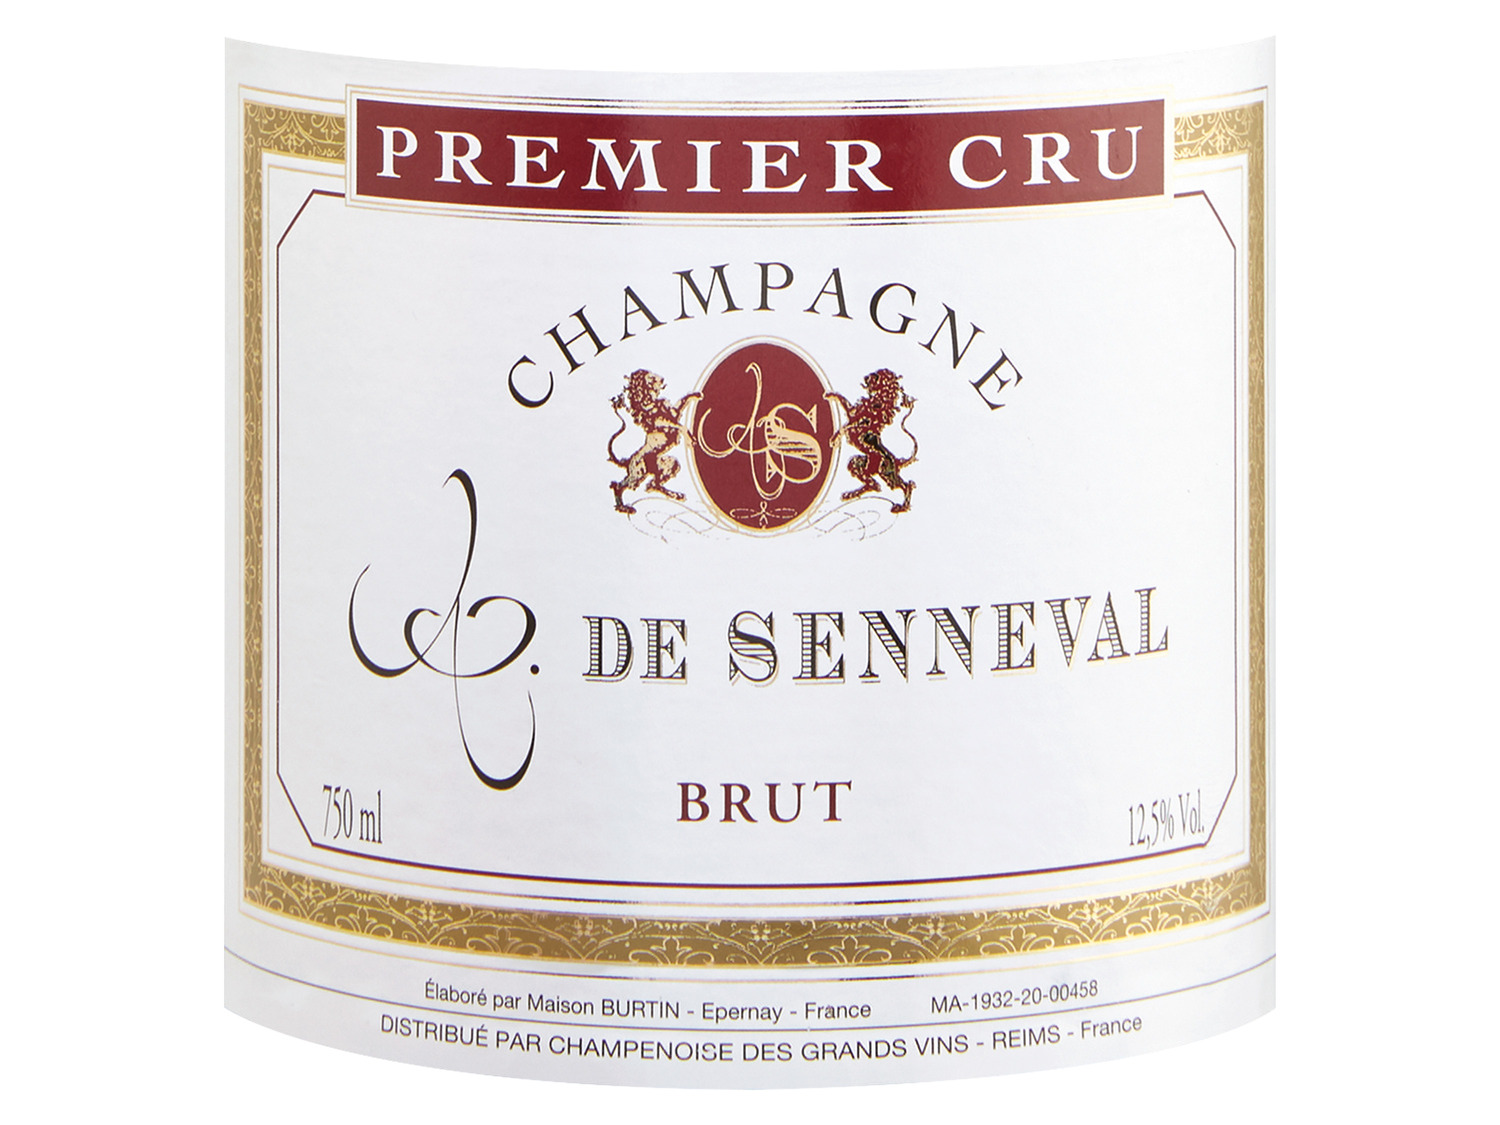 Comte de Cru Senneval Premier brut, Champagner 2011